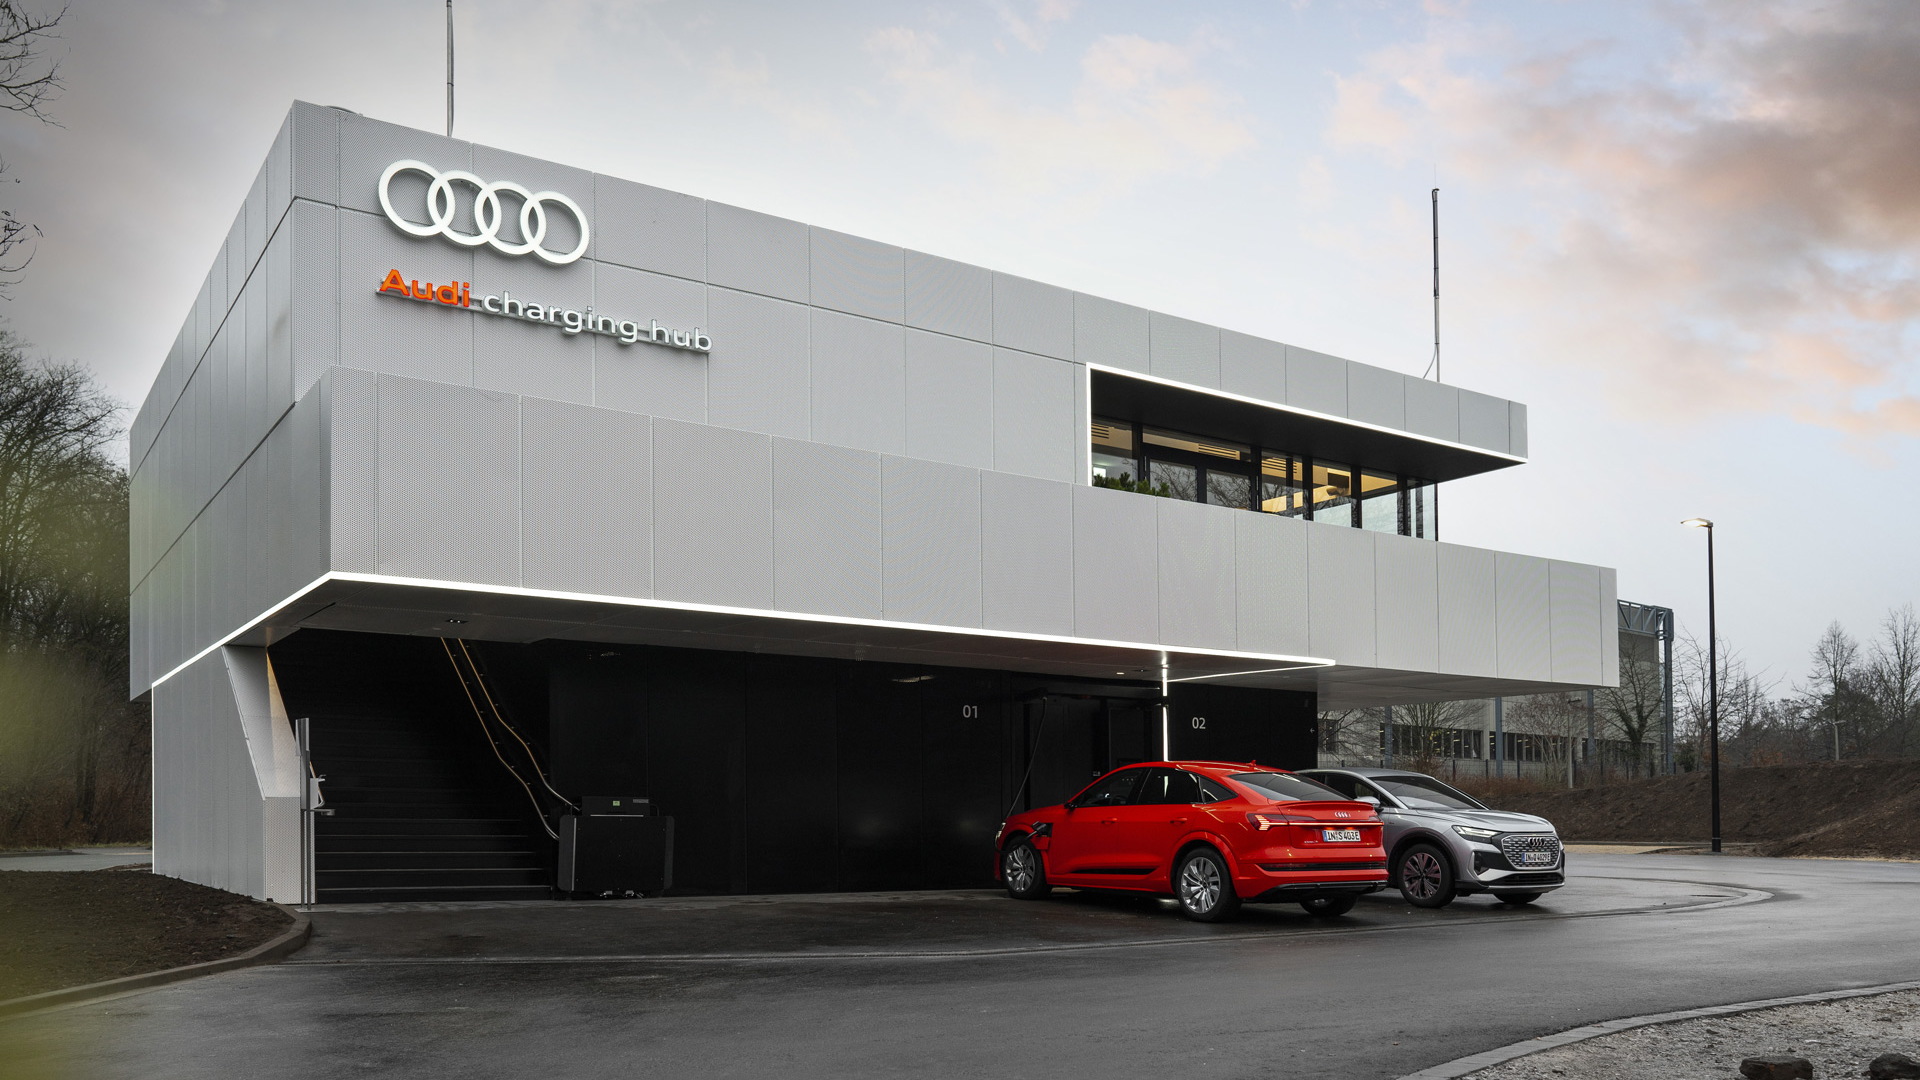 Audi Charging Hub concept in Nuremberg, Germany